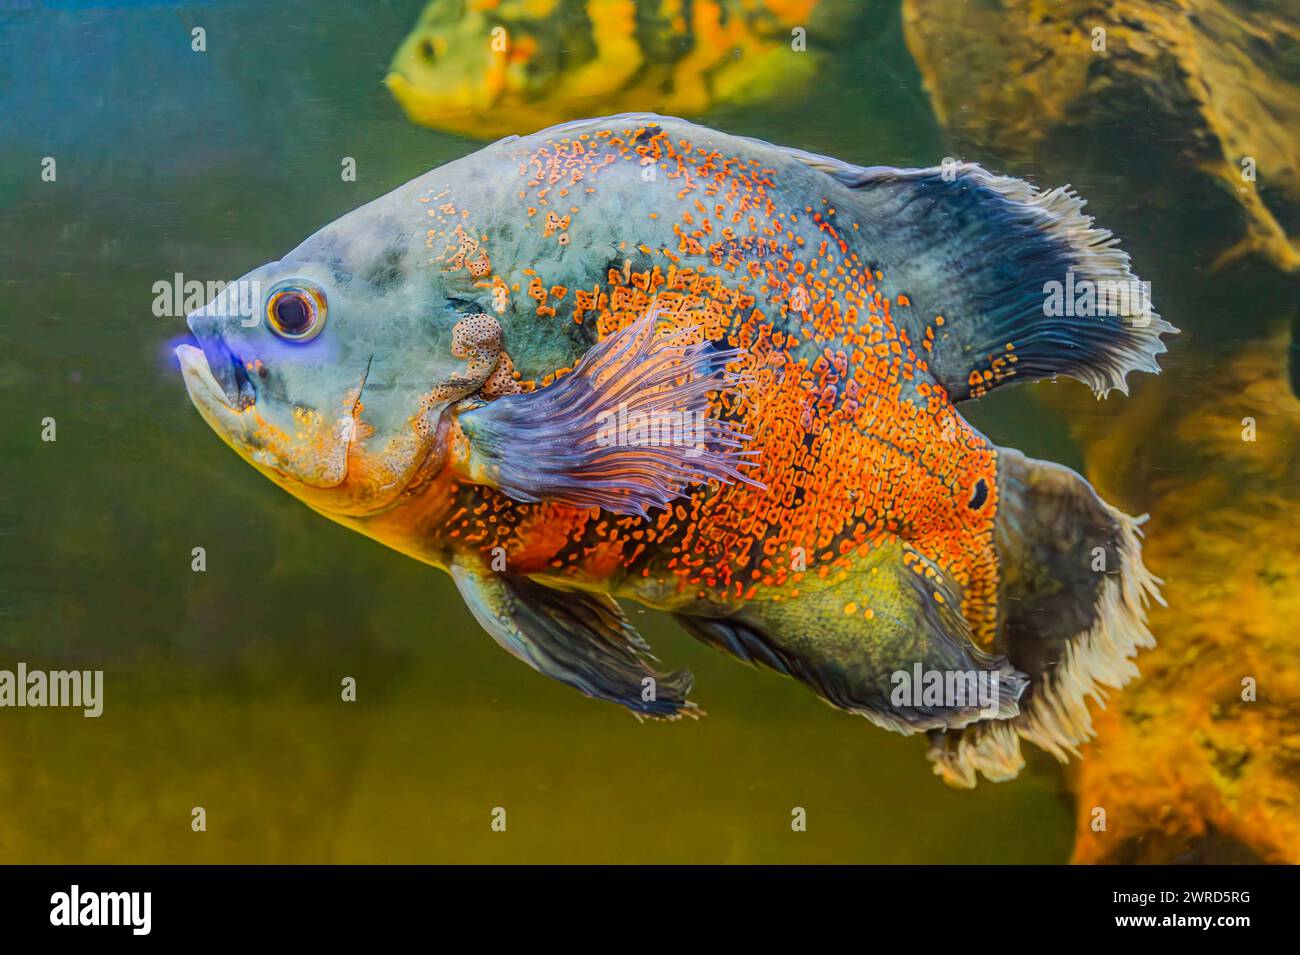 Cichlid sudamericano con un corpo blu vibrante. Il pesce esplora il suo ambiente di acquario, mostrando le sue scaglie e pinne colorate. Foto Stock